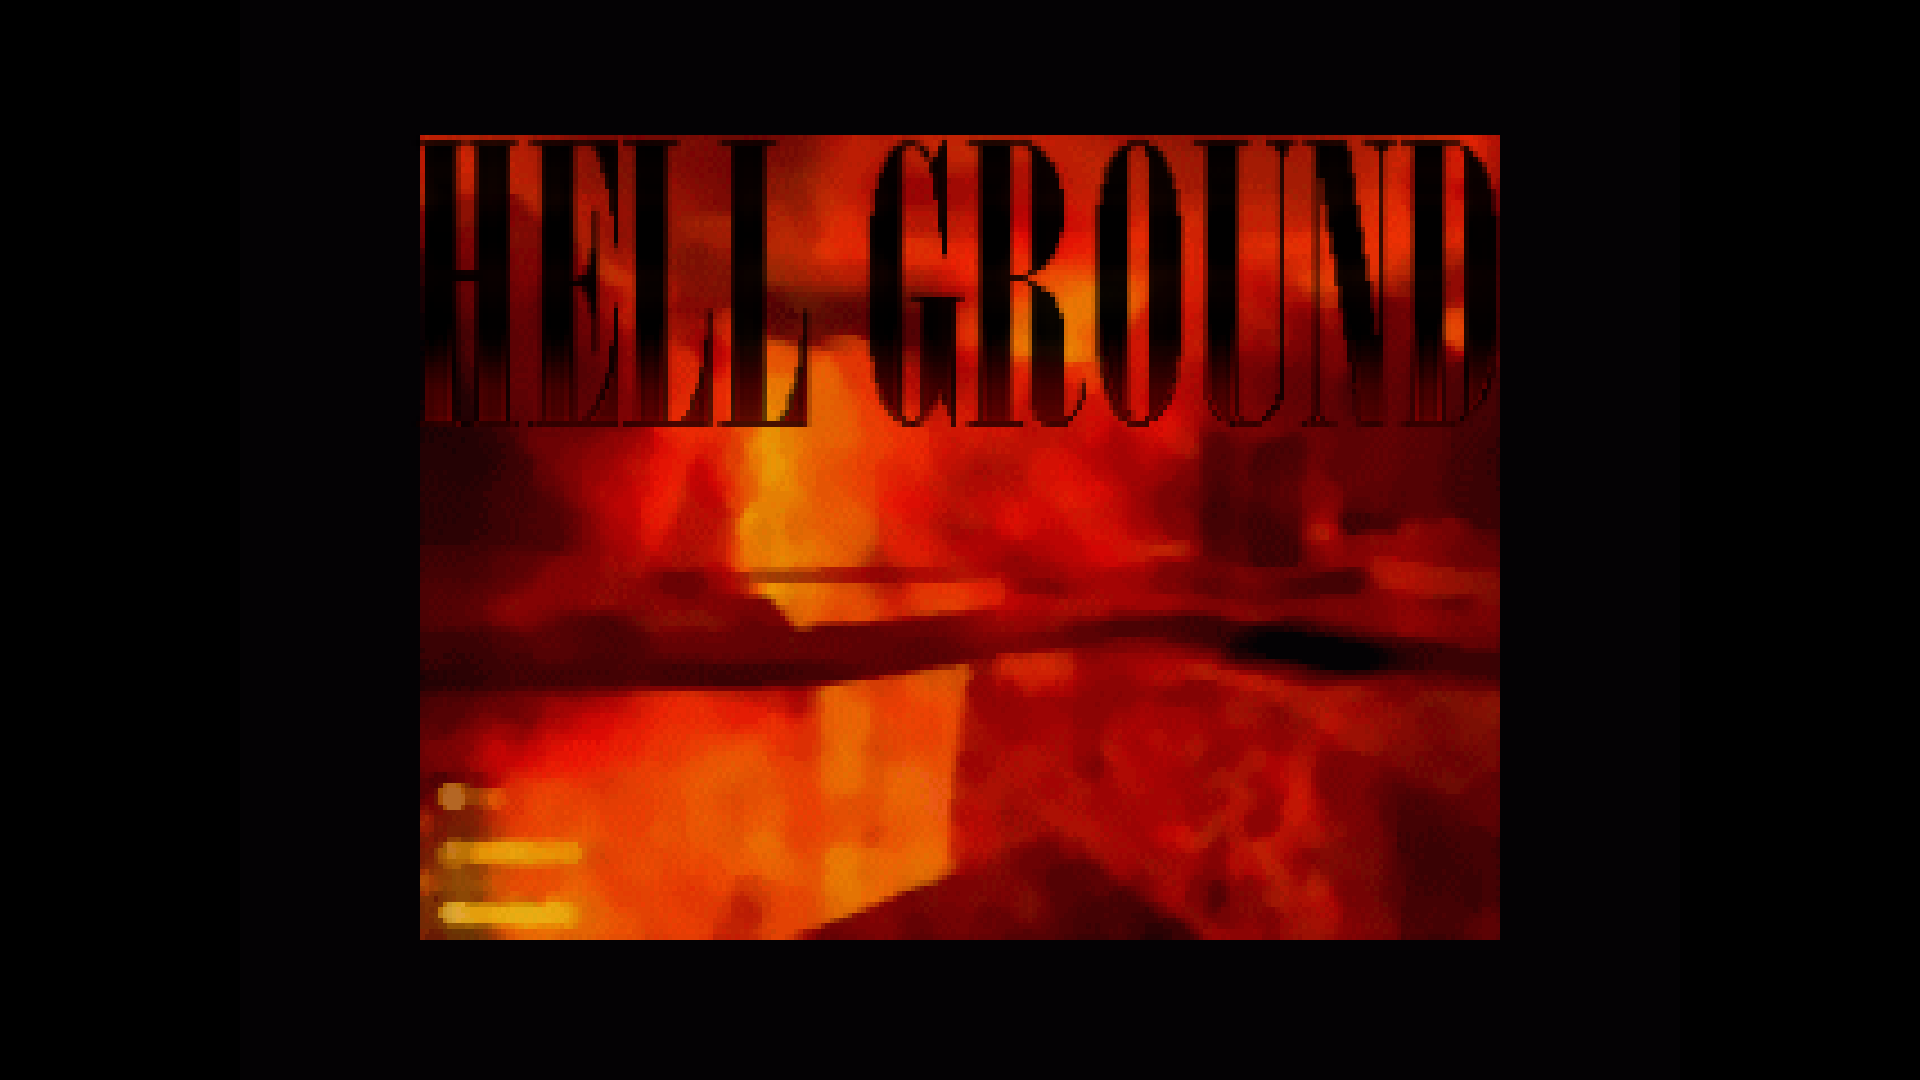 complex_hell_ground